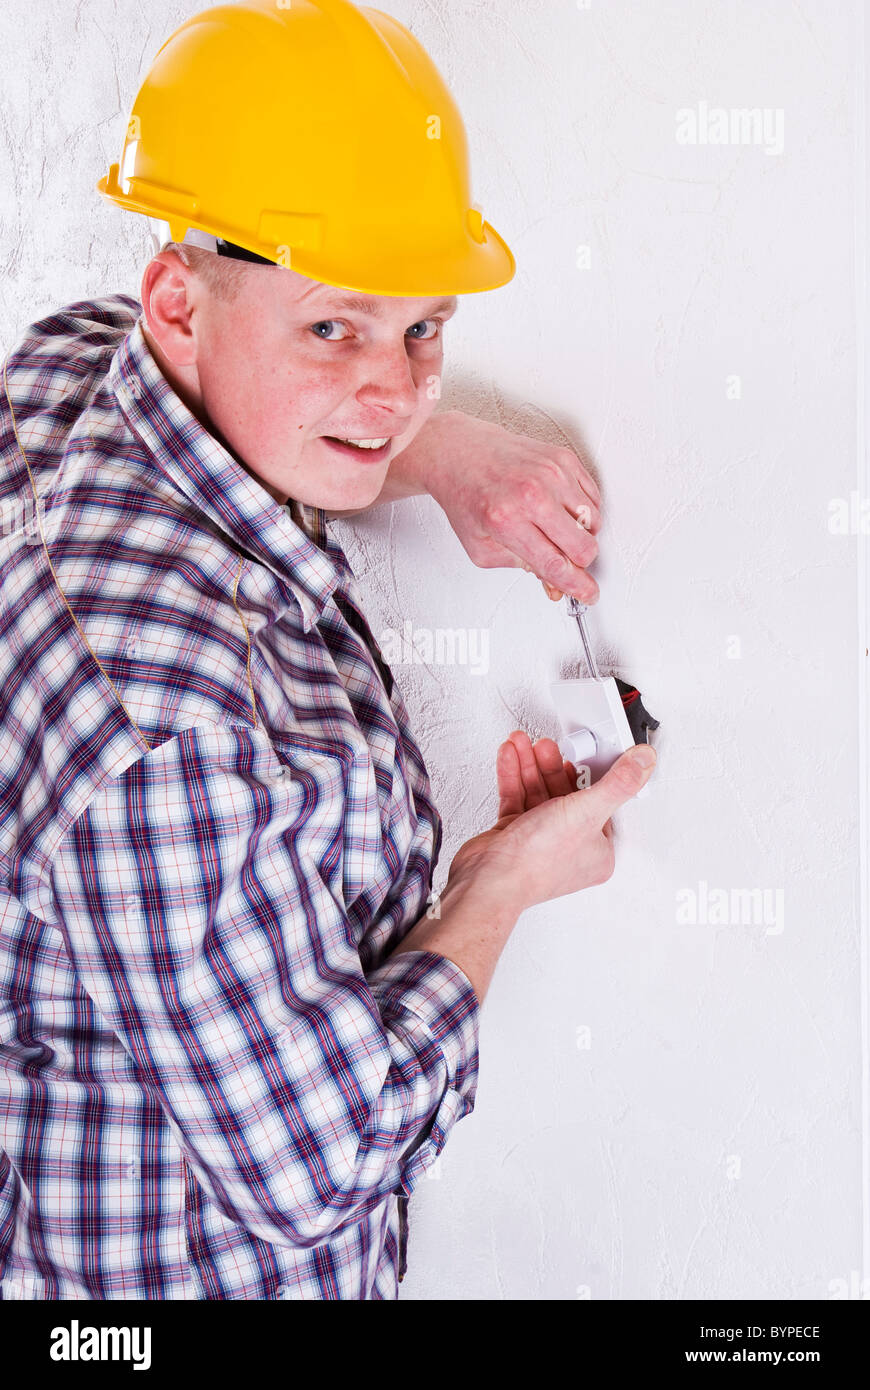 Electricista joven nuevo montaje de interruptor de luz Foto de stock